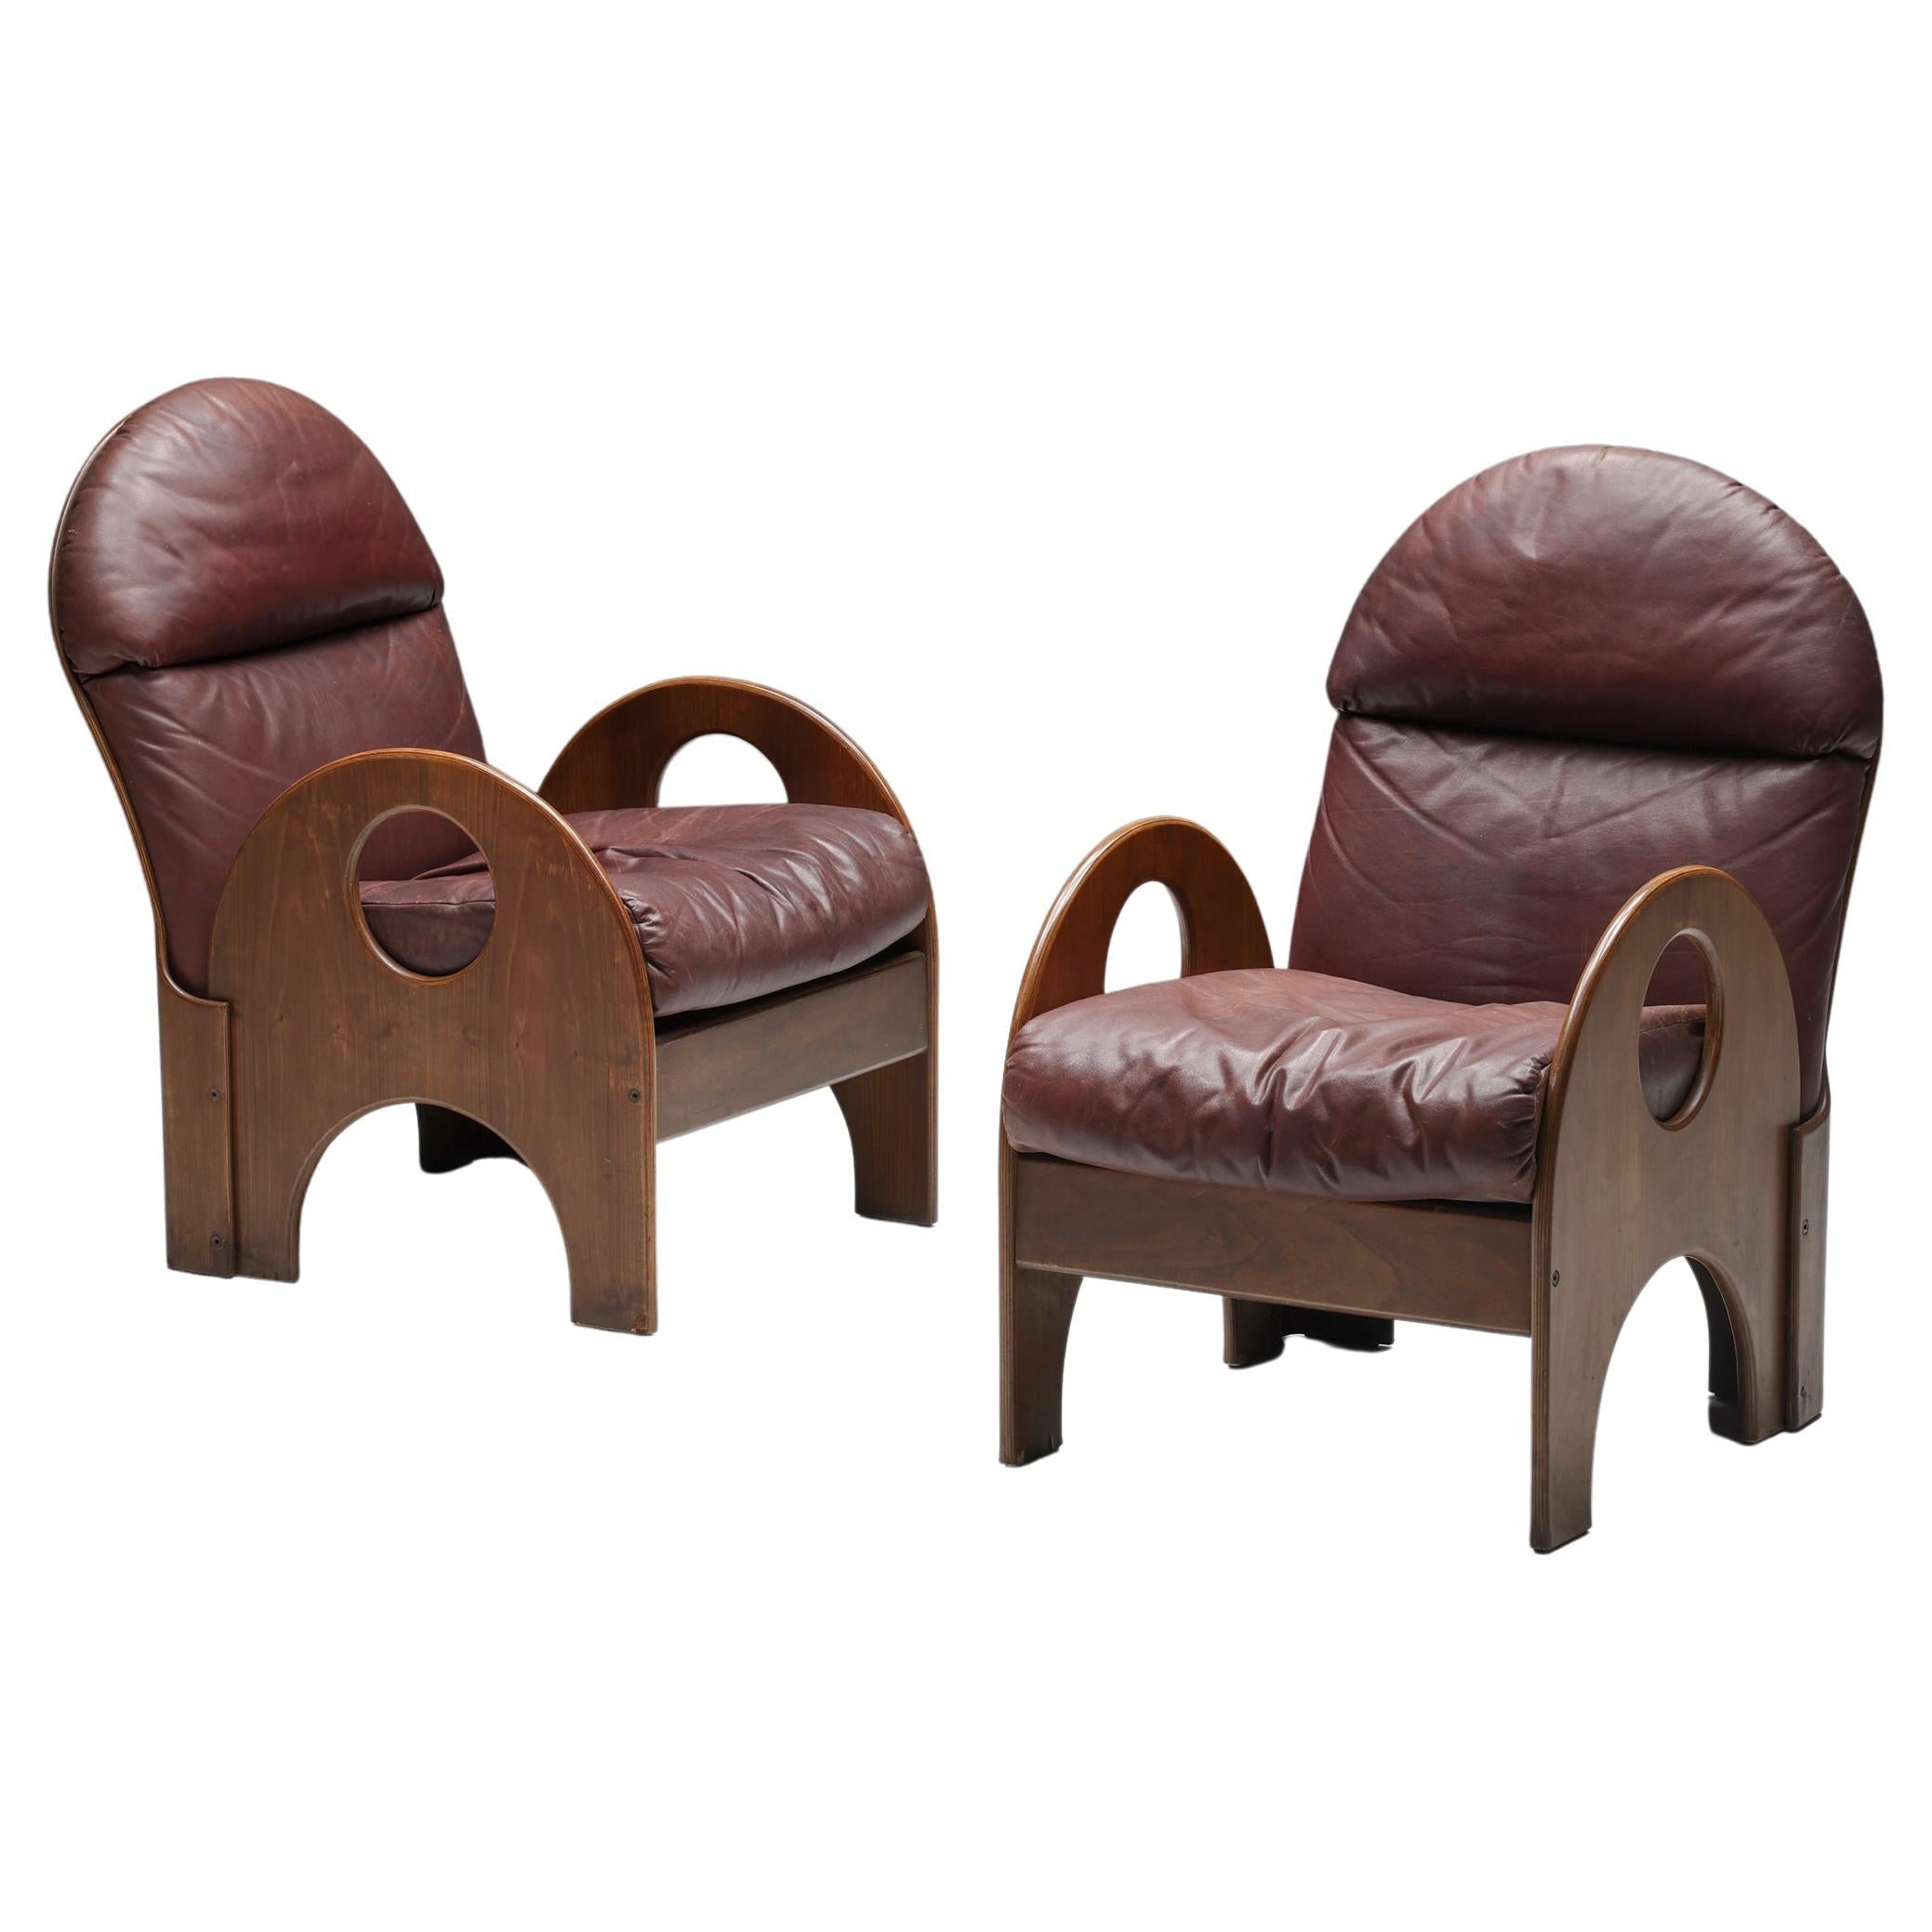 Gae Aulenti Arcata Sessel aus Nussbaum und burgunderfarbenem Leder, 1960er Jahre